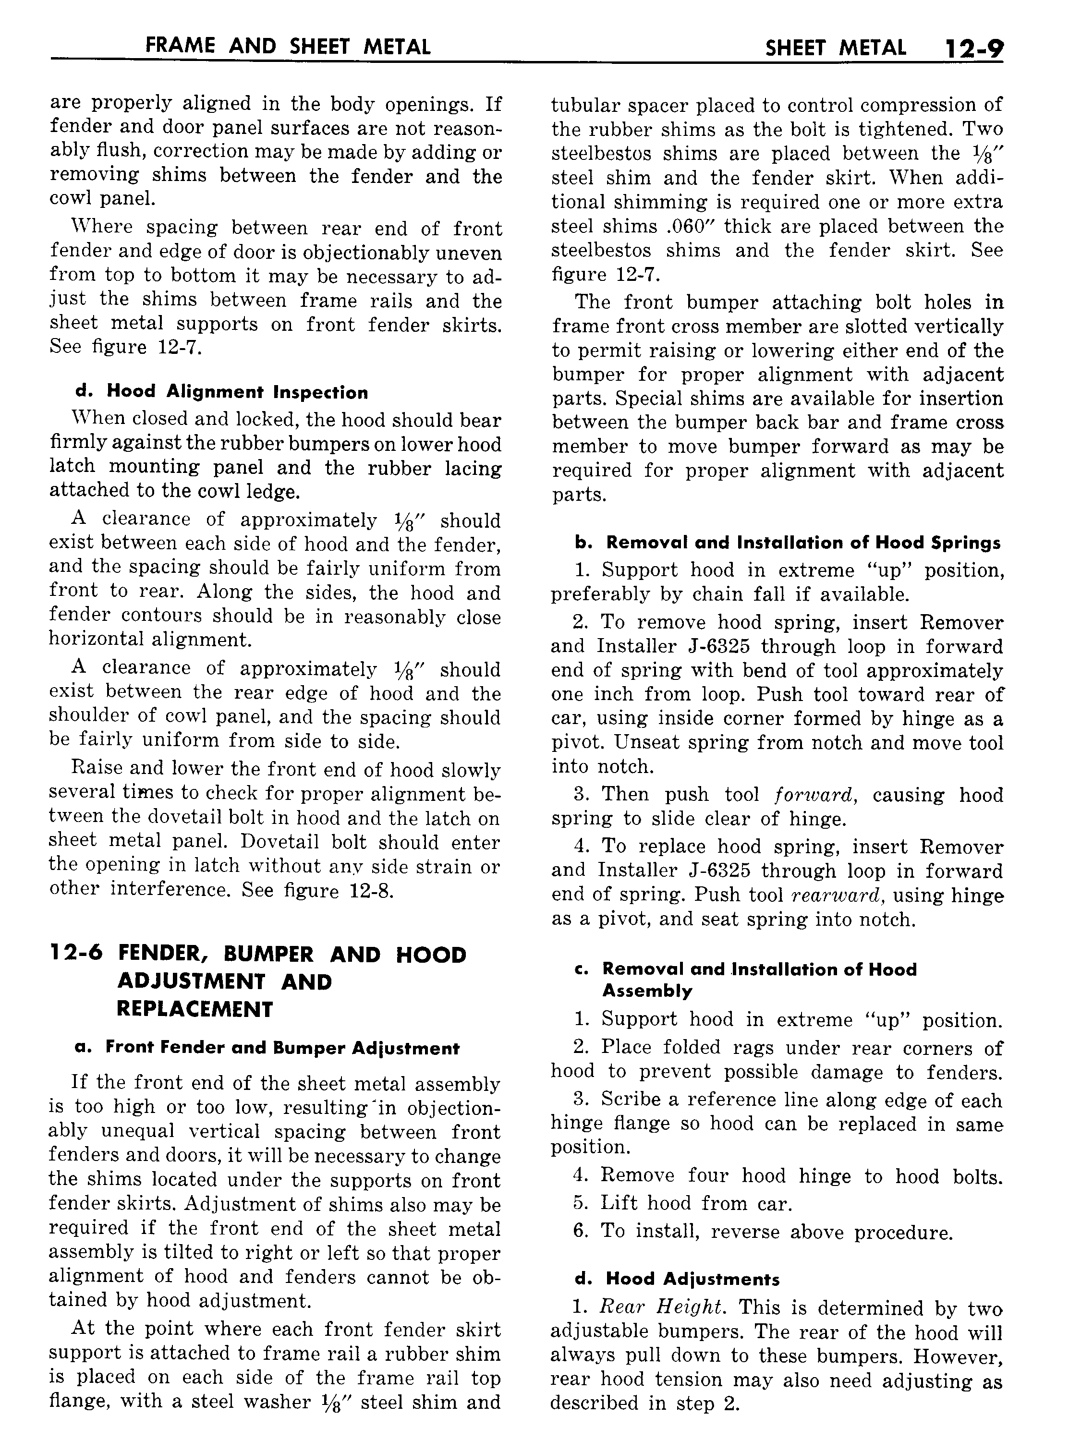 n_13 1957 Buick Shop Manual - Frame & Sheet Metal-009-009.jpg